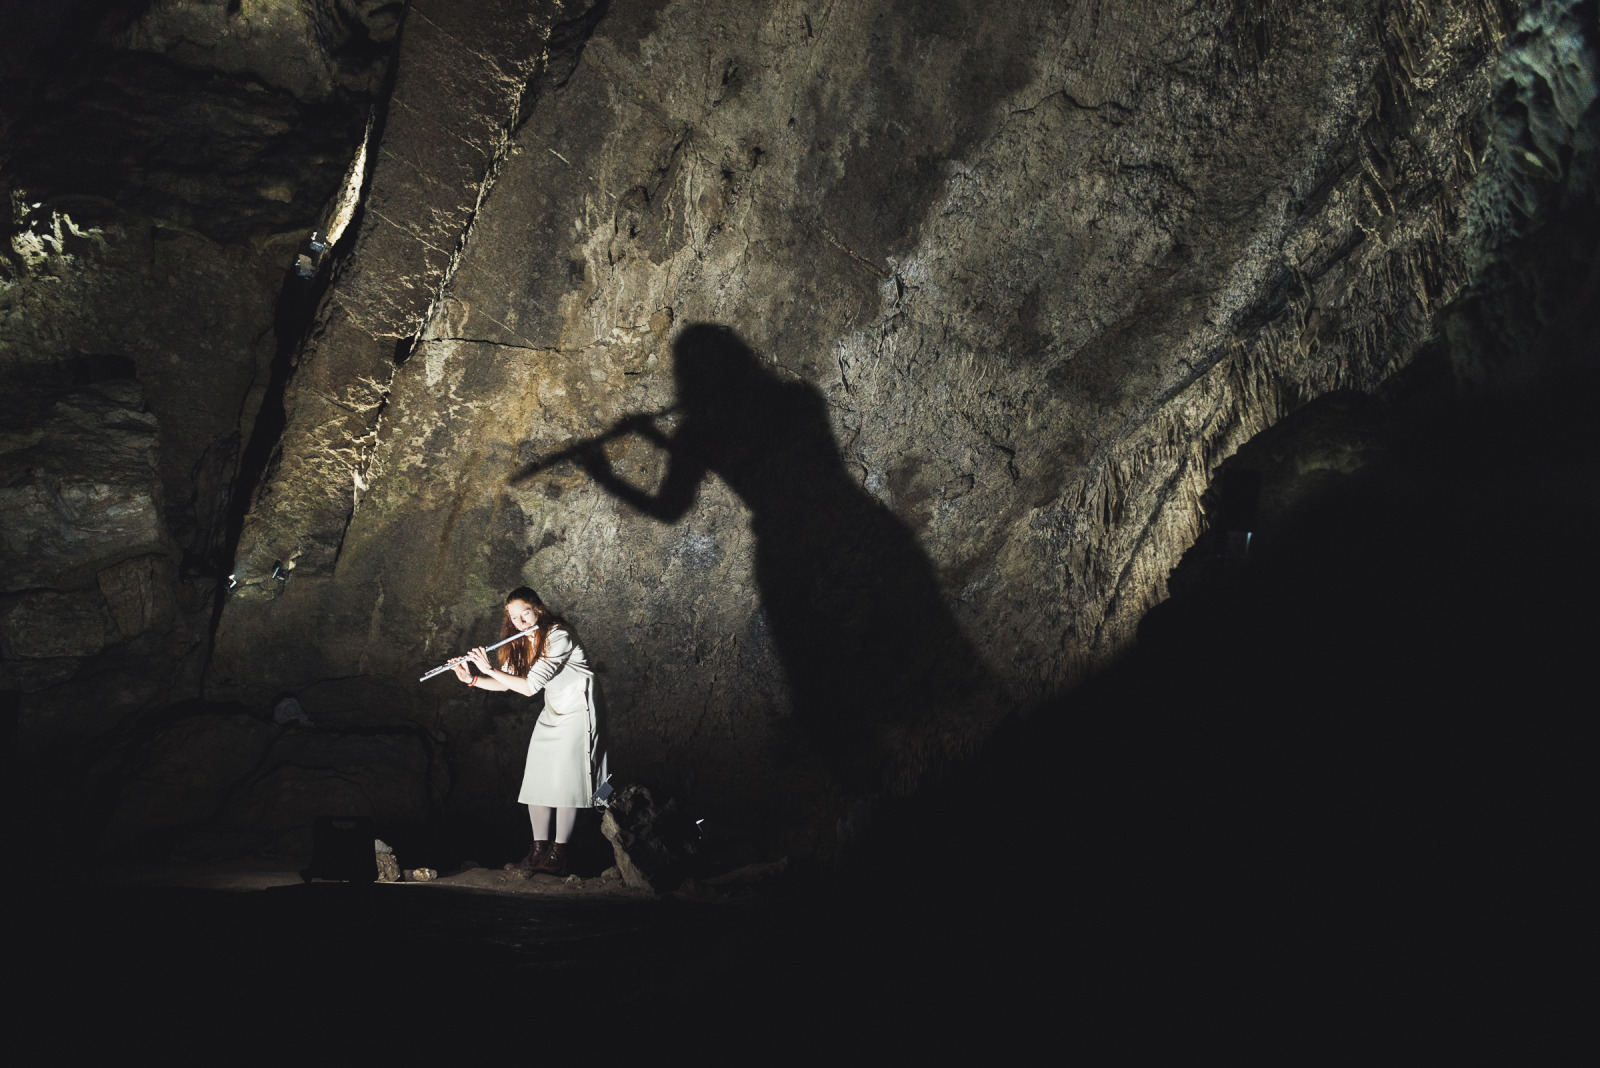 Flutiste jouant de la flûte traversière au coeur des grottes de Han